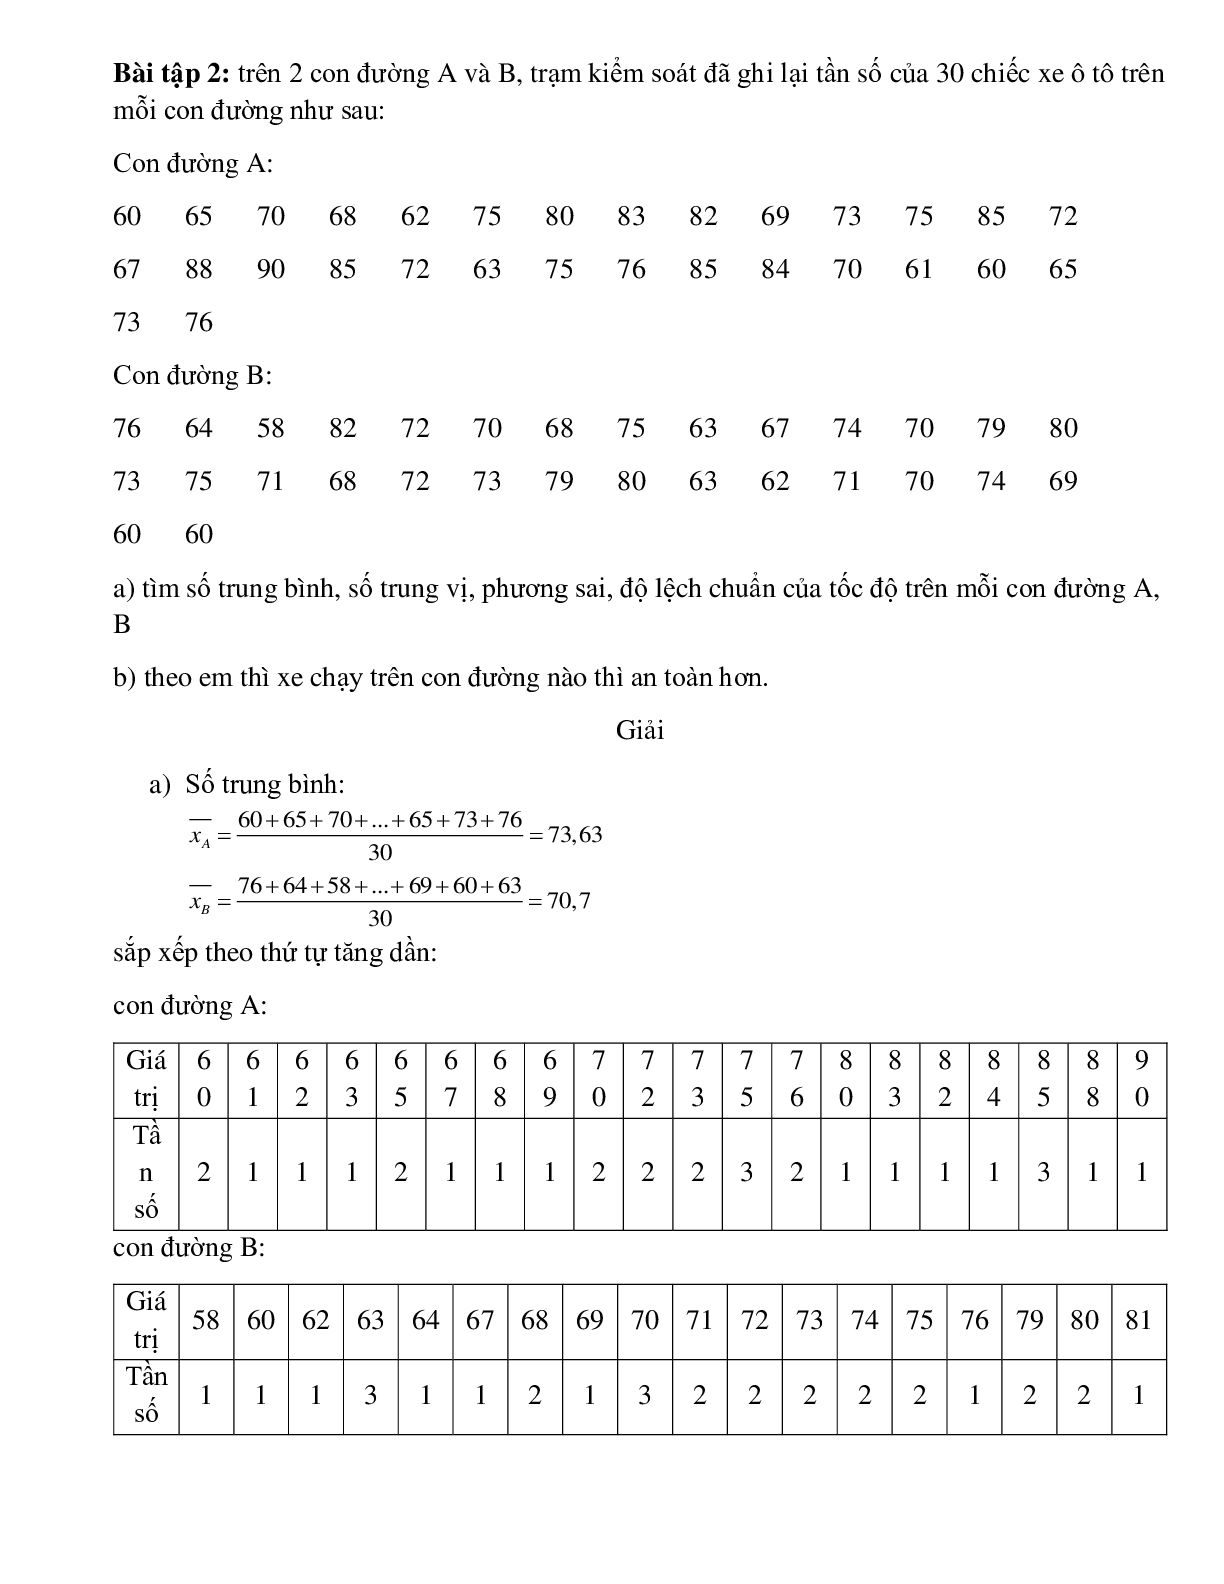 Bài tập Tính phương sai và độ lệch chuẩn đối với bảng phân bố tần số, tần suất ghép lớp có đáp án (trang 2)